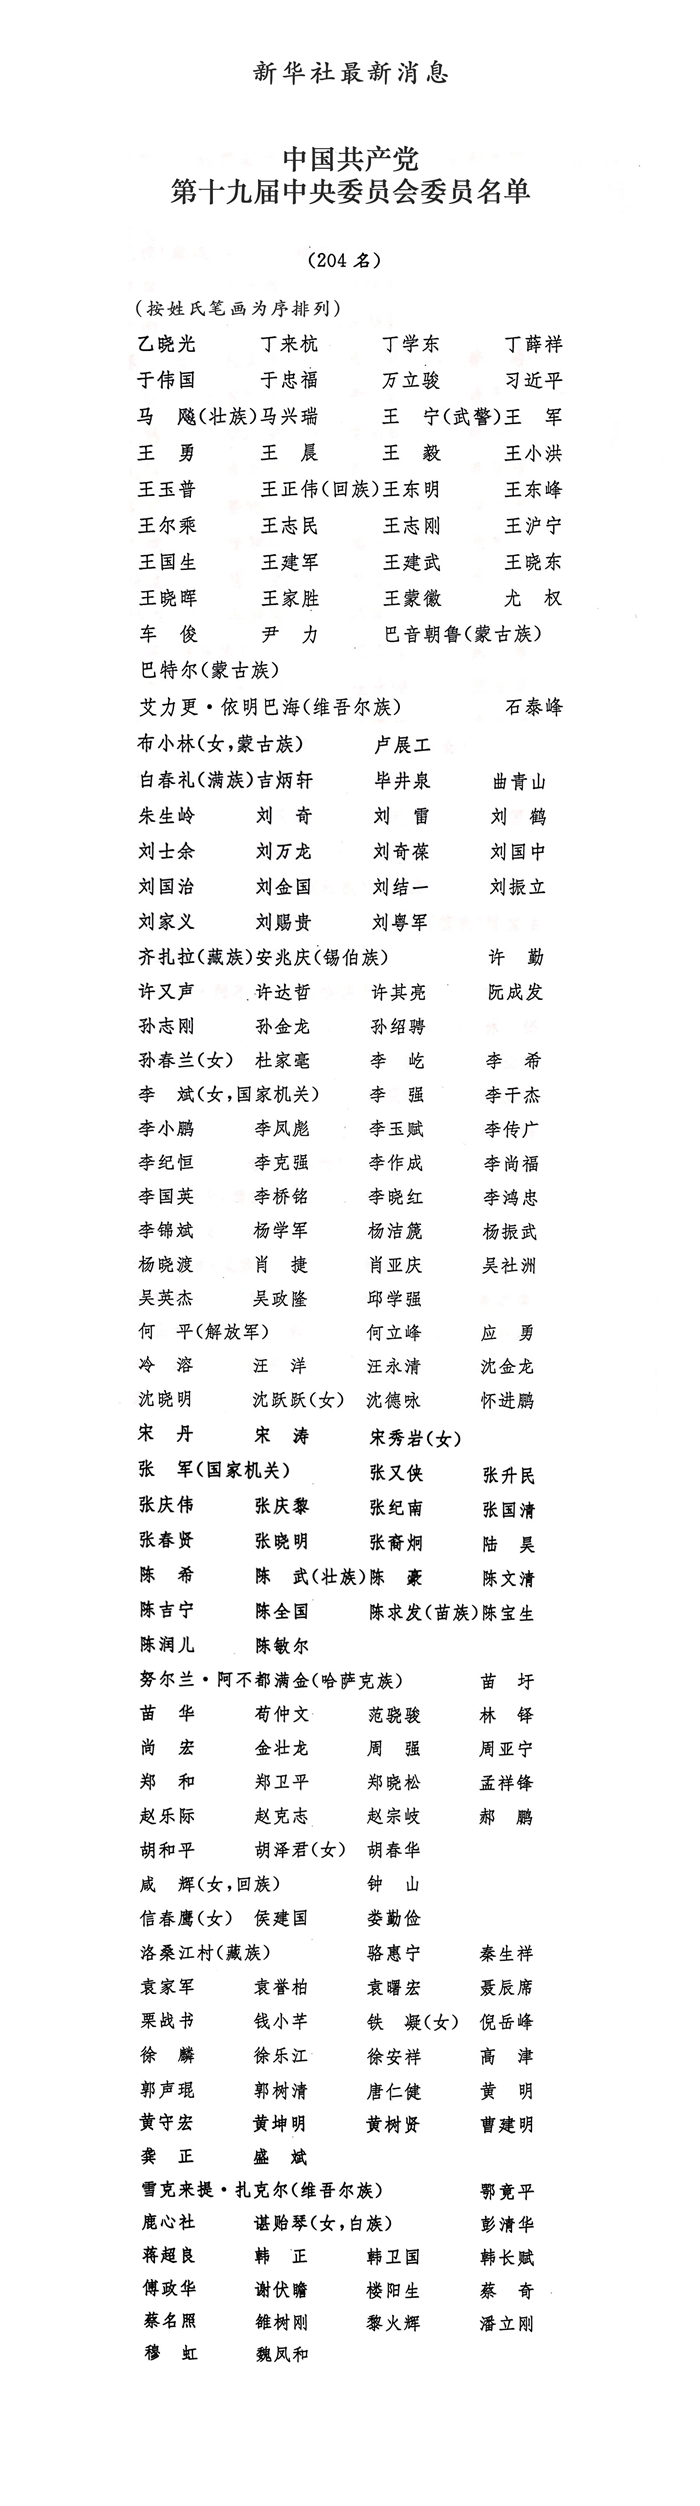 中国共产党第十九届中央委员会委员名单